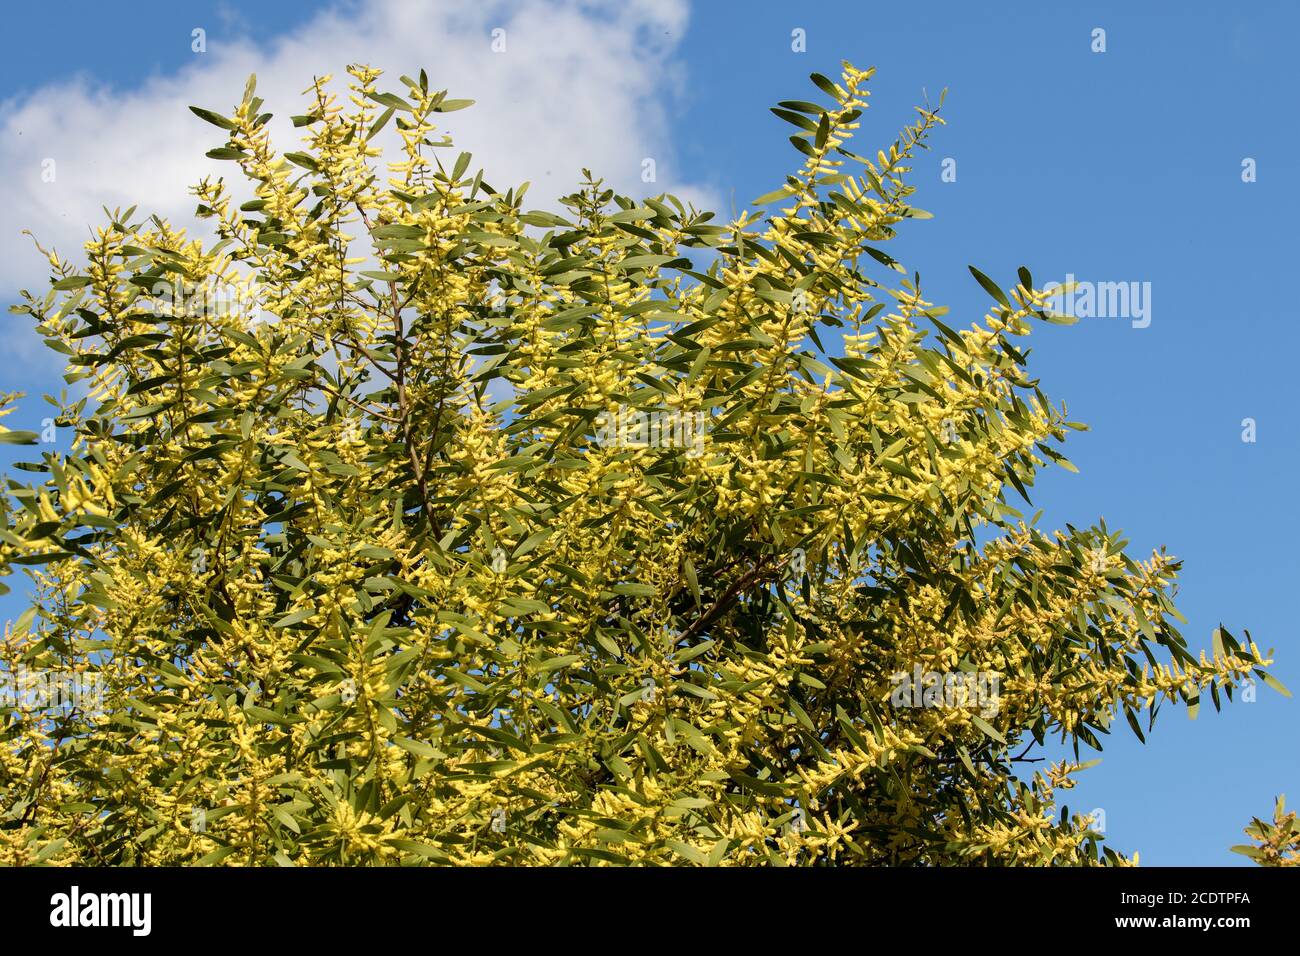 Australian Sydney Golden Wattle Tree in flower Stock Photo